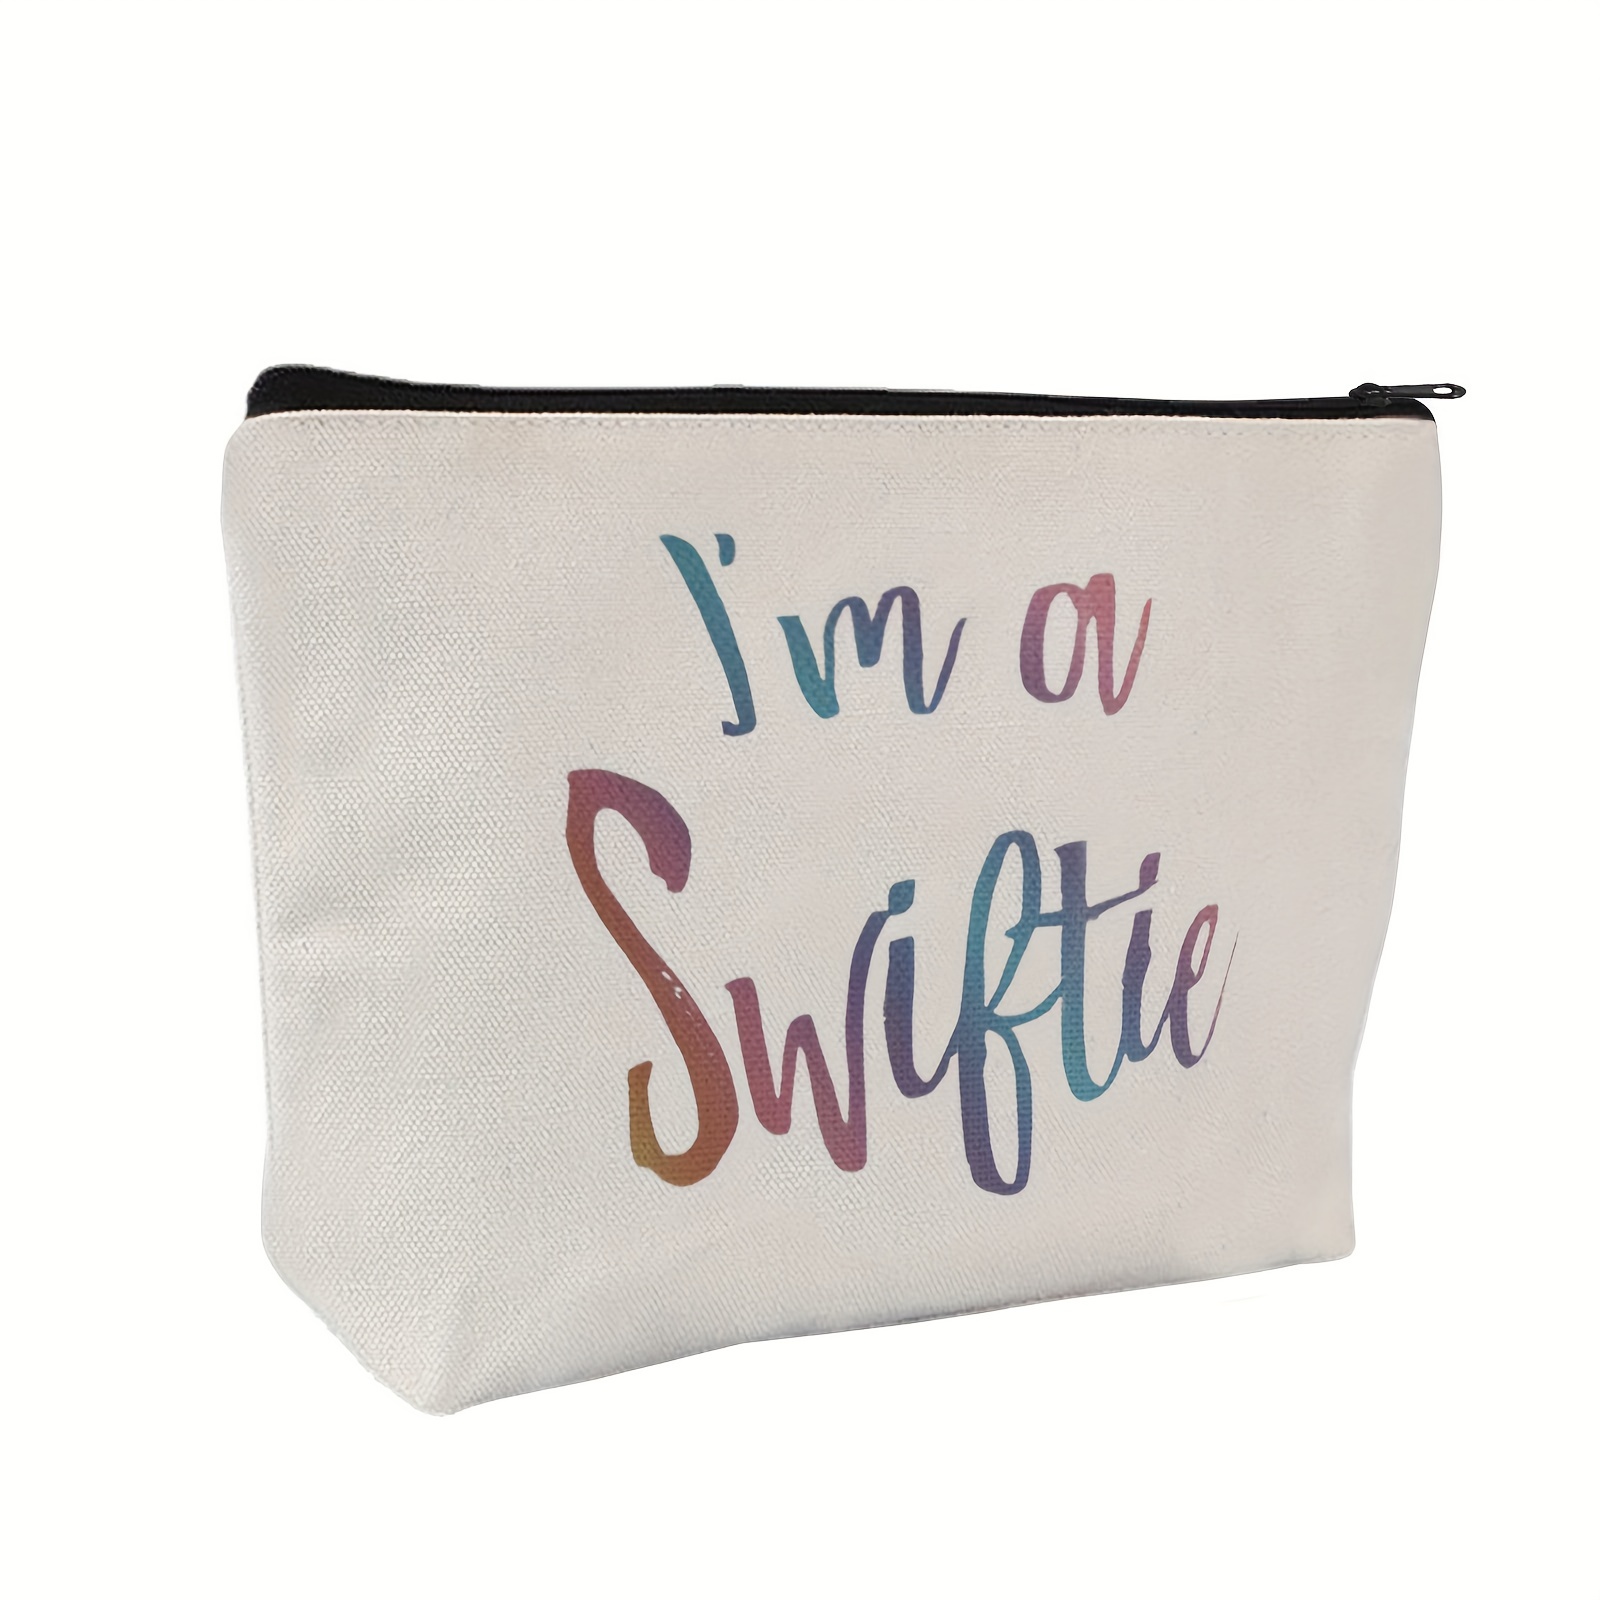 Taylor Swift Folklore Bag, Taylor Swift Makeup Bag